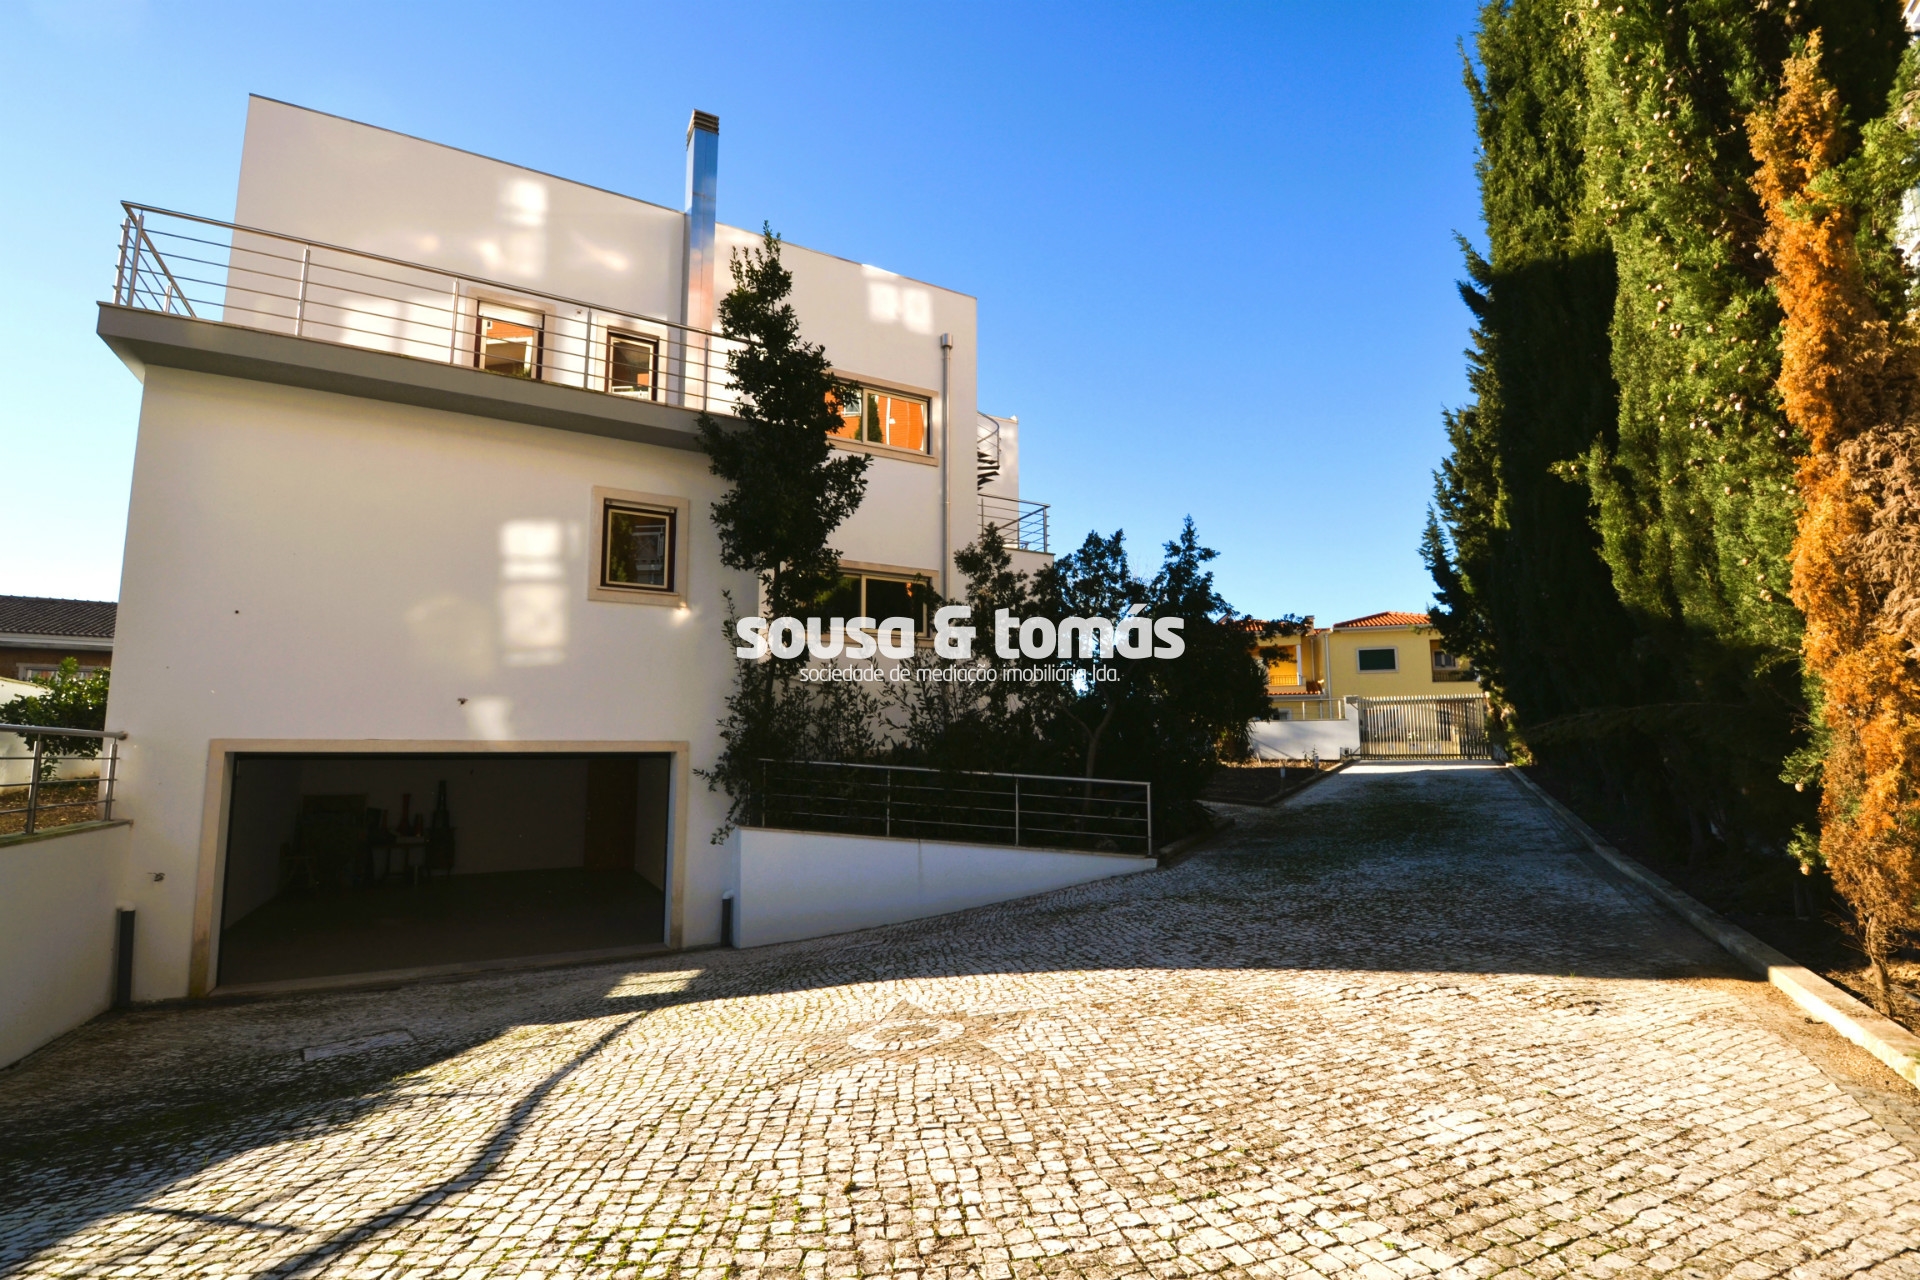 Sousa & Tomás - Imobiliária, Lda